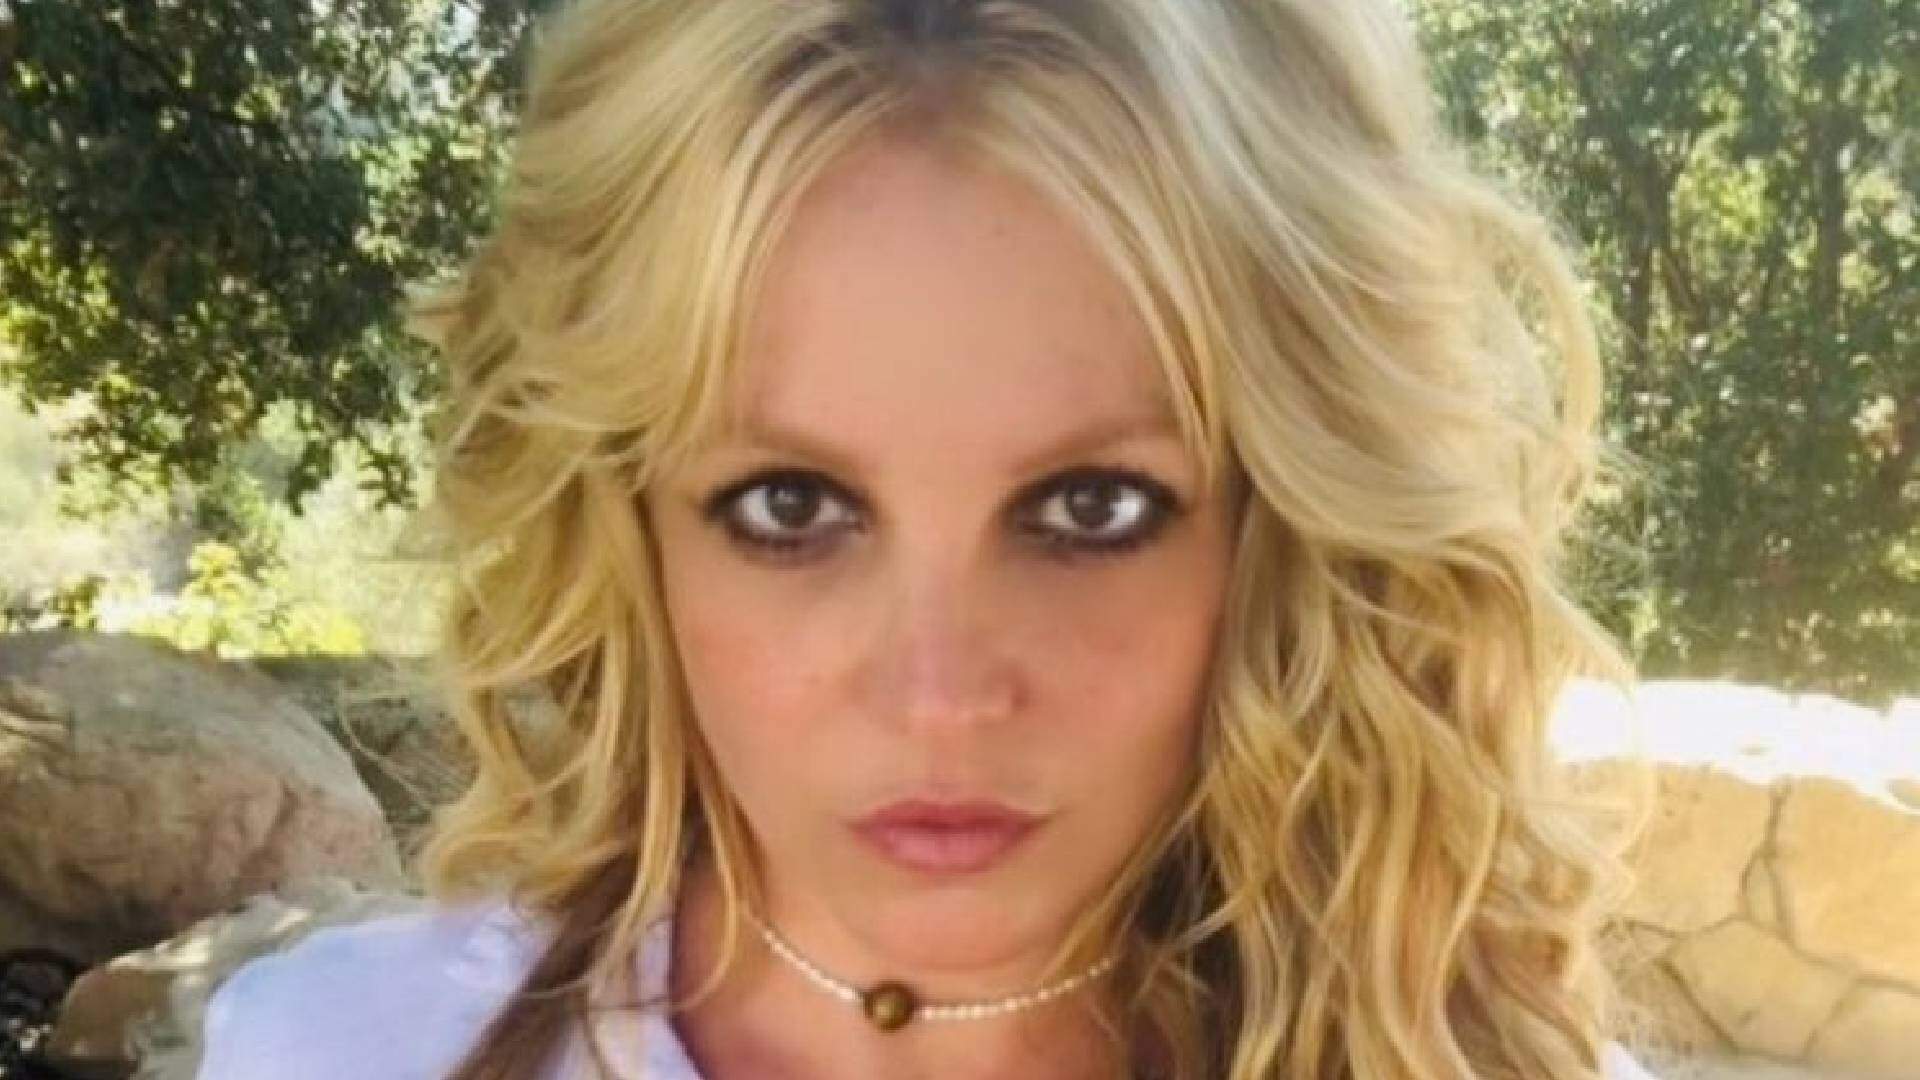 Britney Spears detona a própria mãe, faz acusação grave e expõe o que ninguém sabia - Metropolitana FM